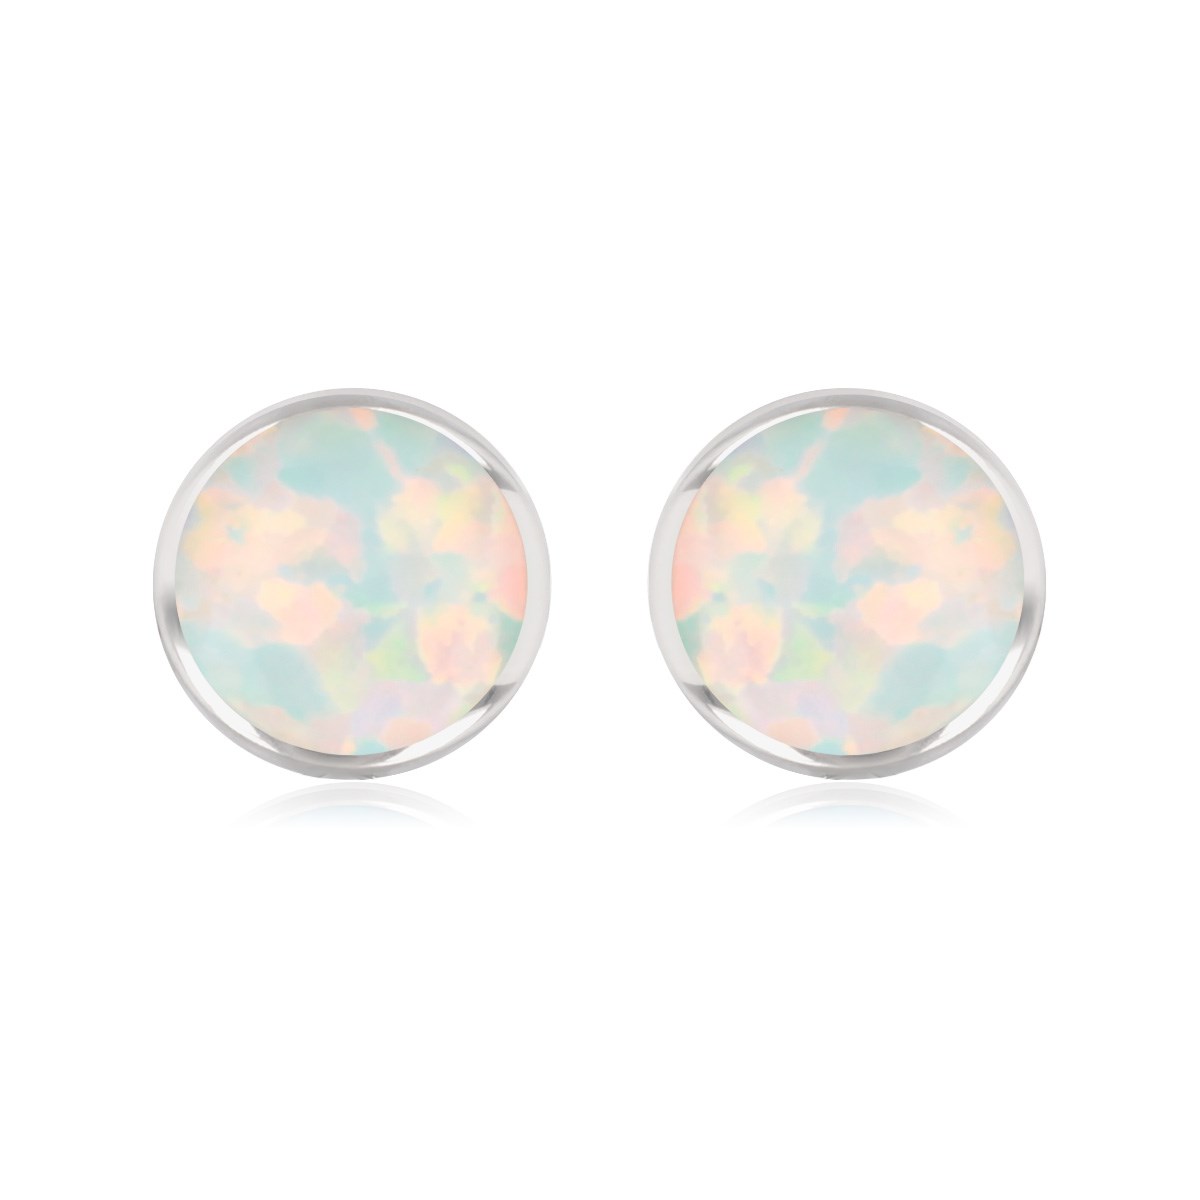 Boucles d'oreille argent rhodié opale blanche imitation forme ronde 7mm